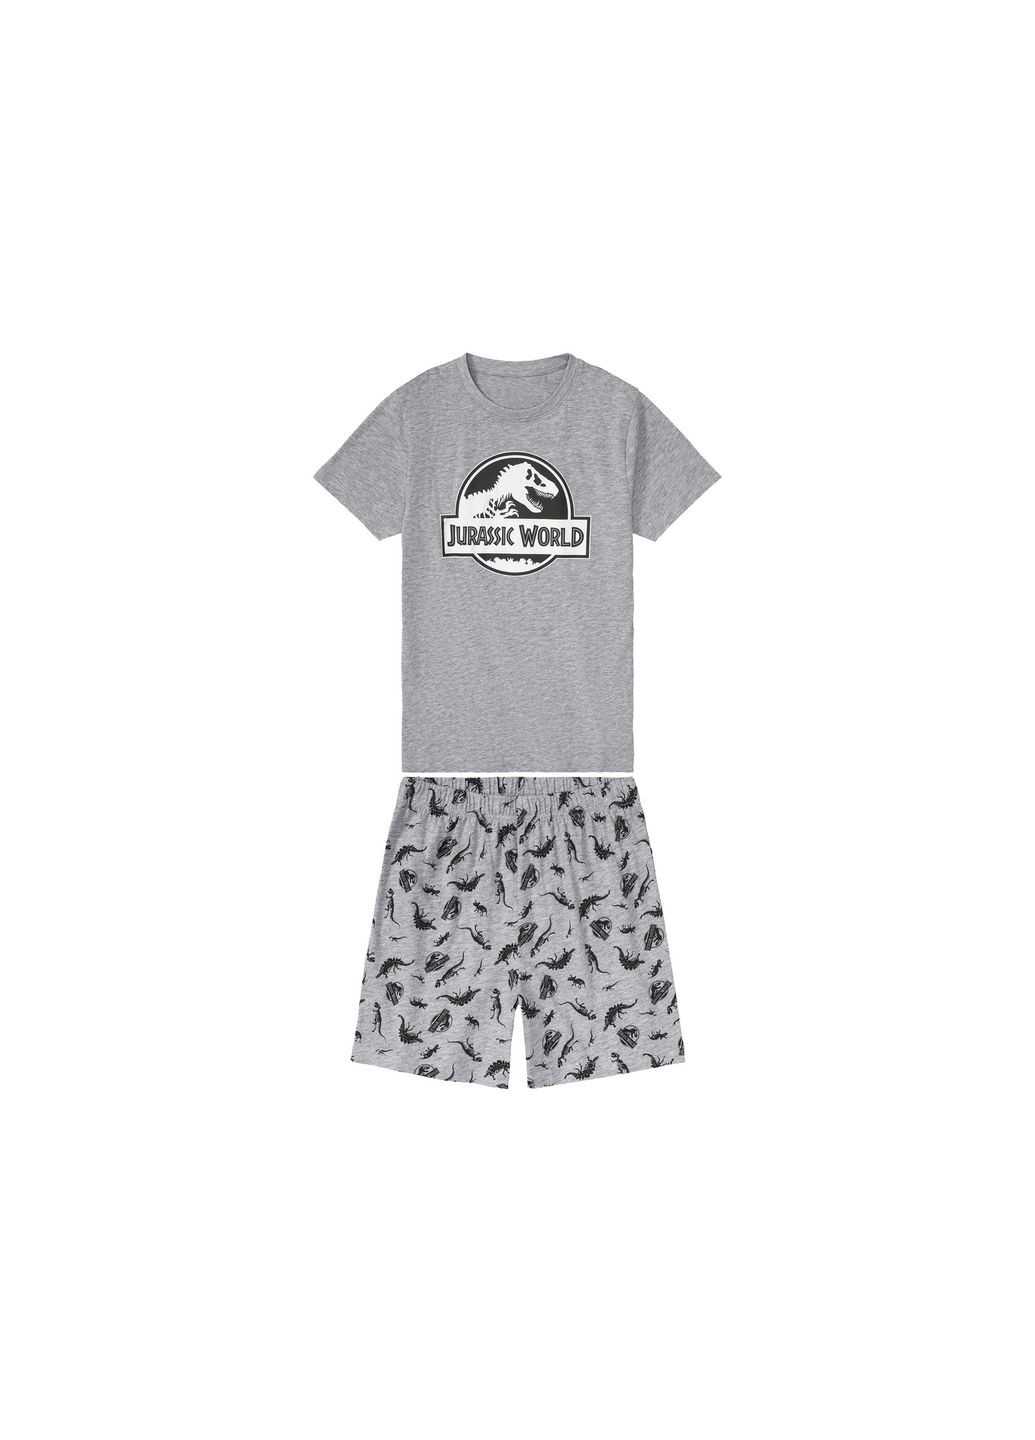 Серая пижама (футболка и шорты) для мальчика jurassic world 406156 Disney